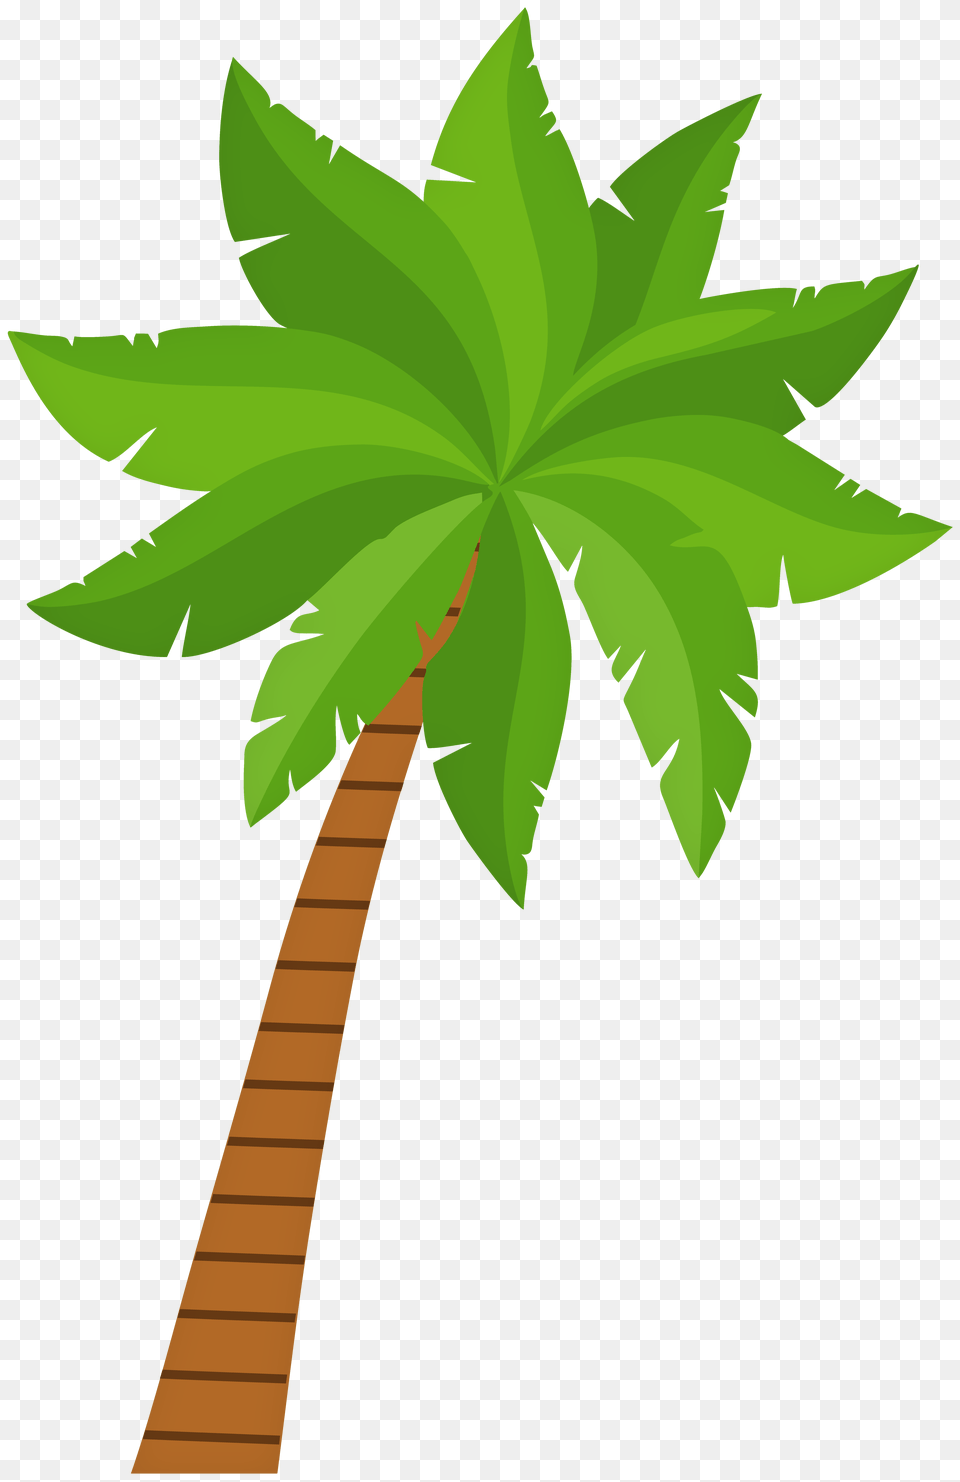 Palm Tree Clip Art, Green, Plant, Vegetation, Leaf Free Transparent Png